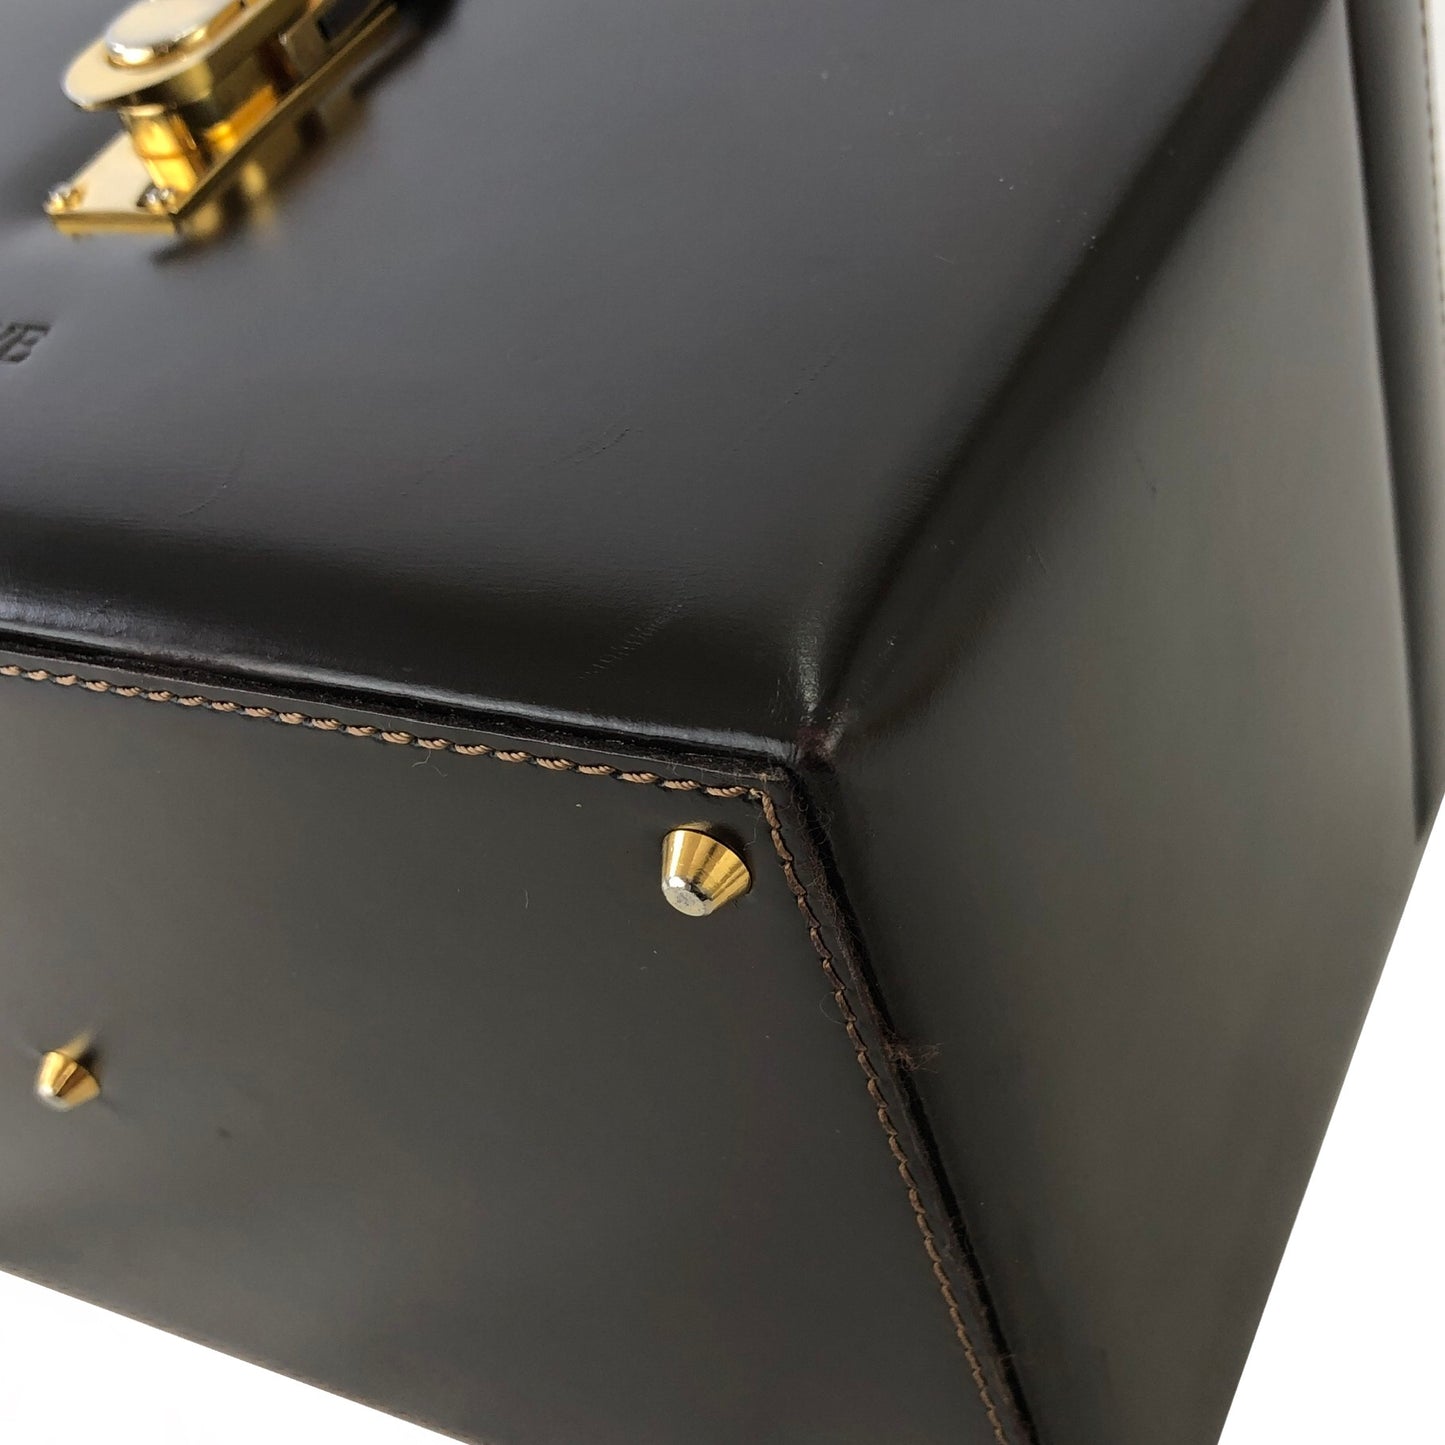 LOEWE Anagram Metal Closure Leather Vanity bag Box bag Brown Vintage j4pwks